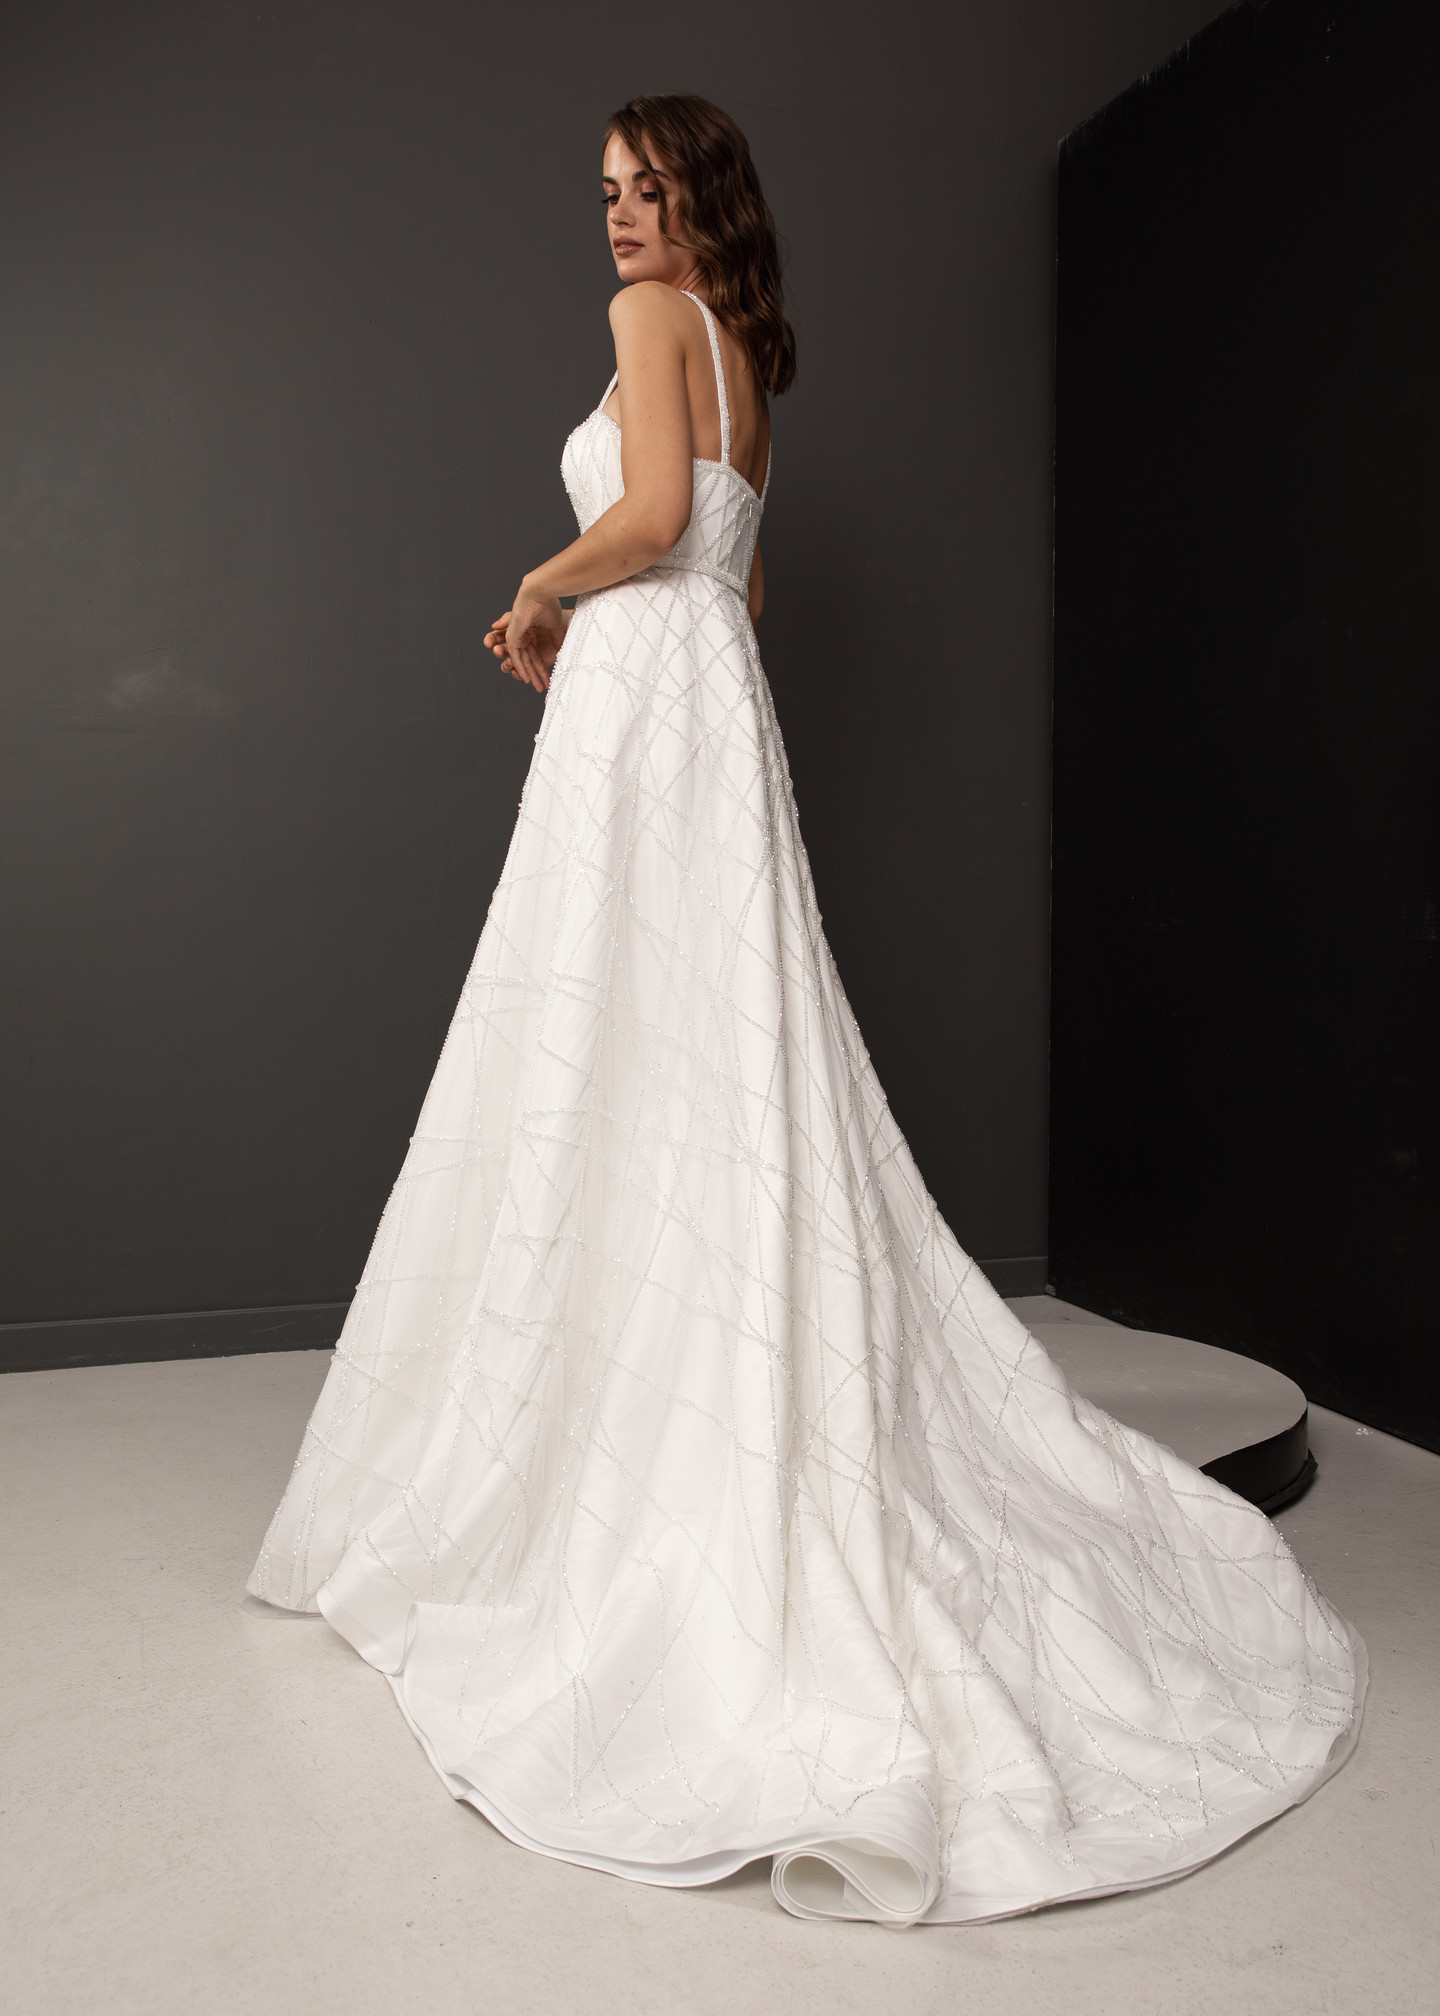 Платье Габи, 2021, одежда, платье, свадебное, молочно-белый, вышивка, А-силуэт, шлейф